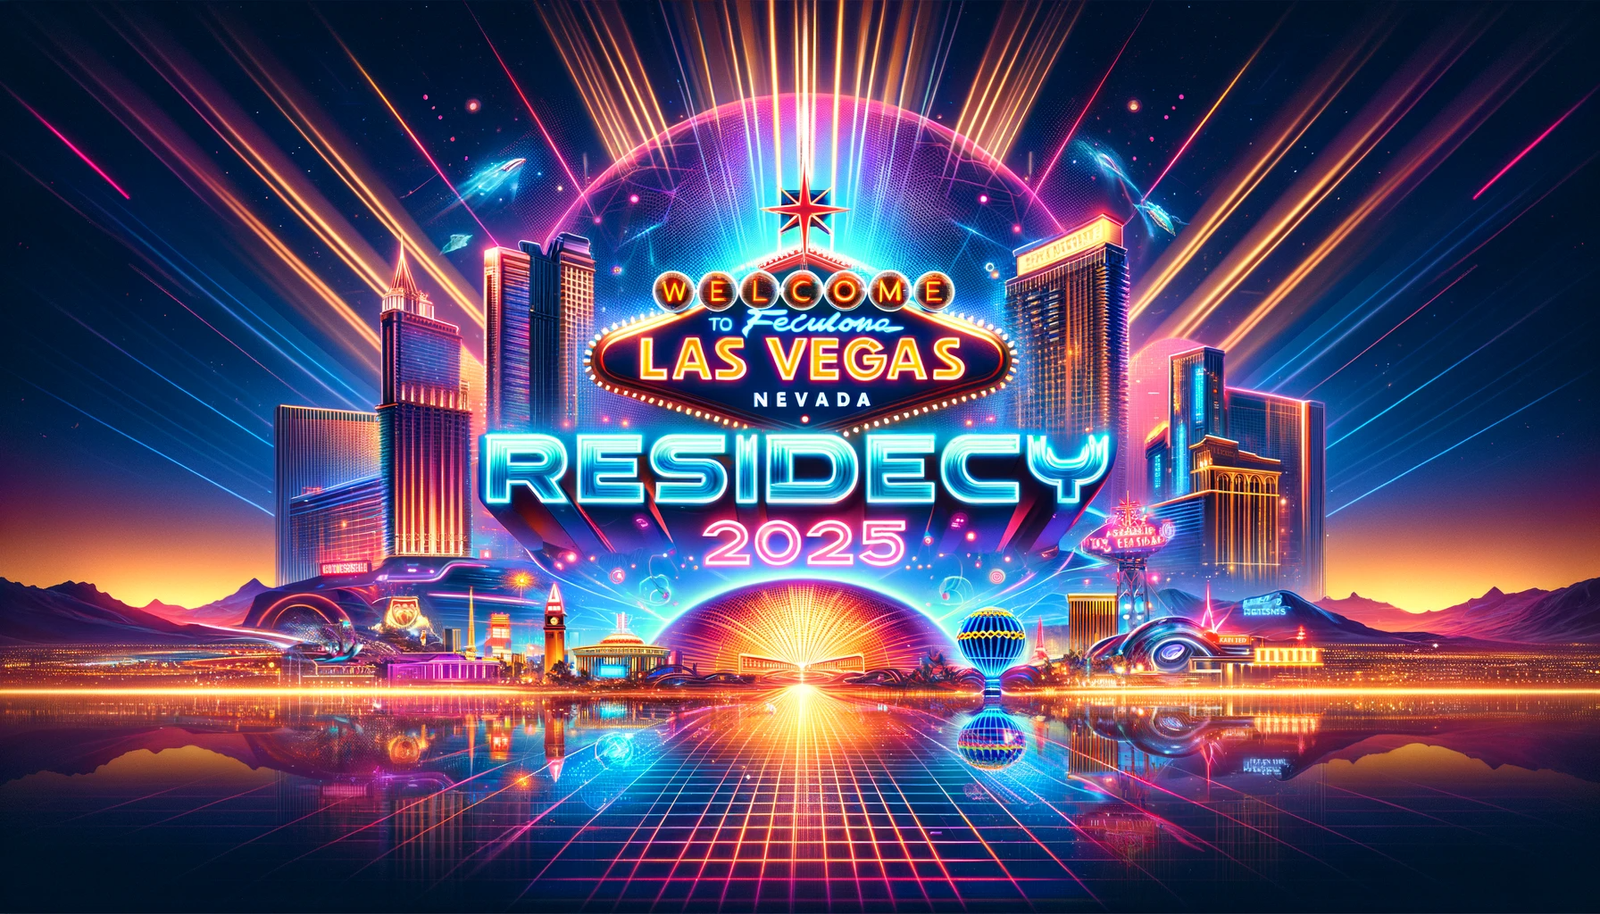 Las Vegas Residency 2025 - Get Tickets & See Lineup